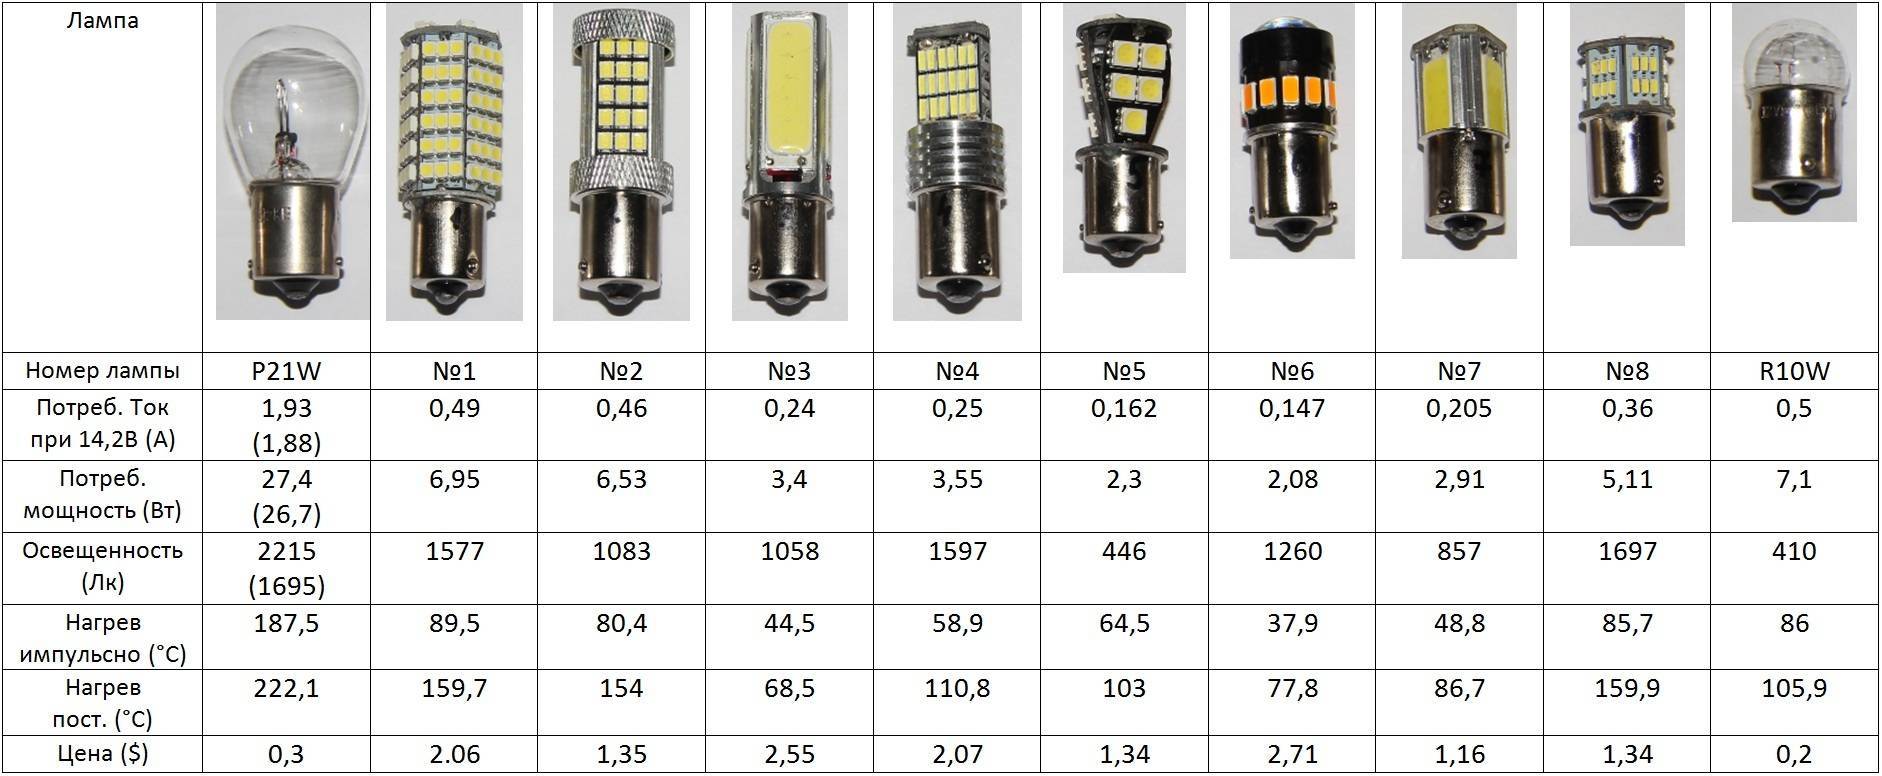 Светодиодные лампы на 220В: характеристики, маркировка, критерии выбора + обзор лучших брендов